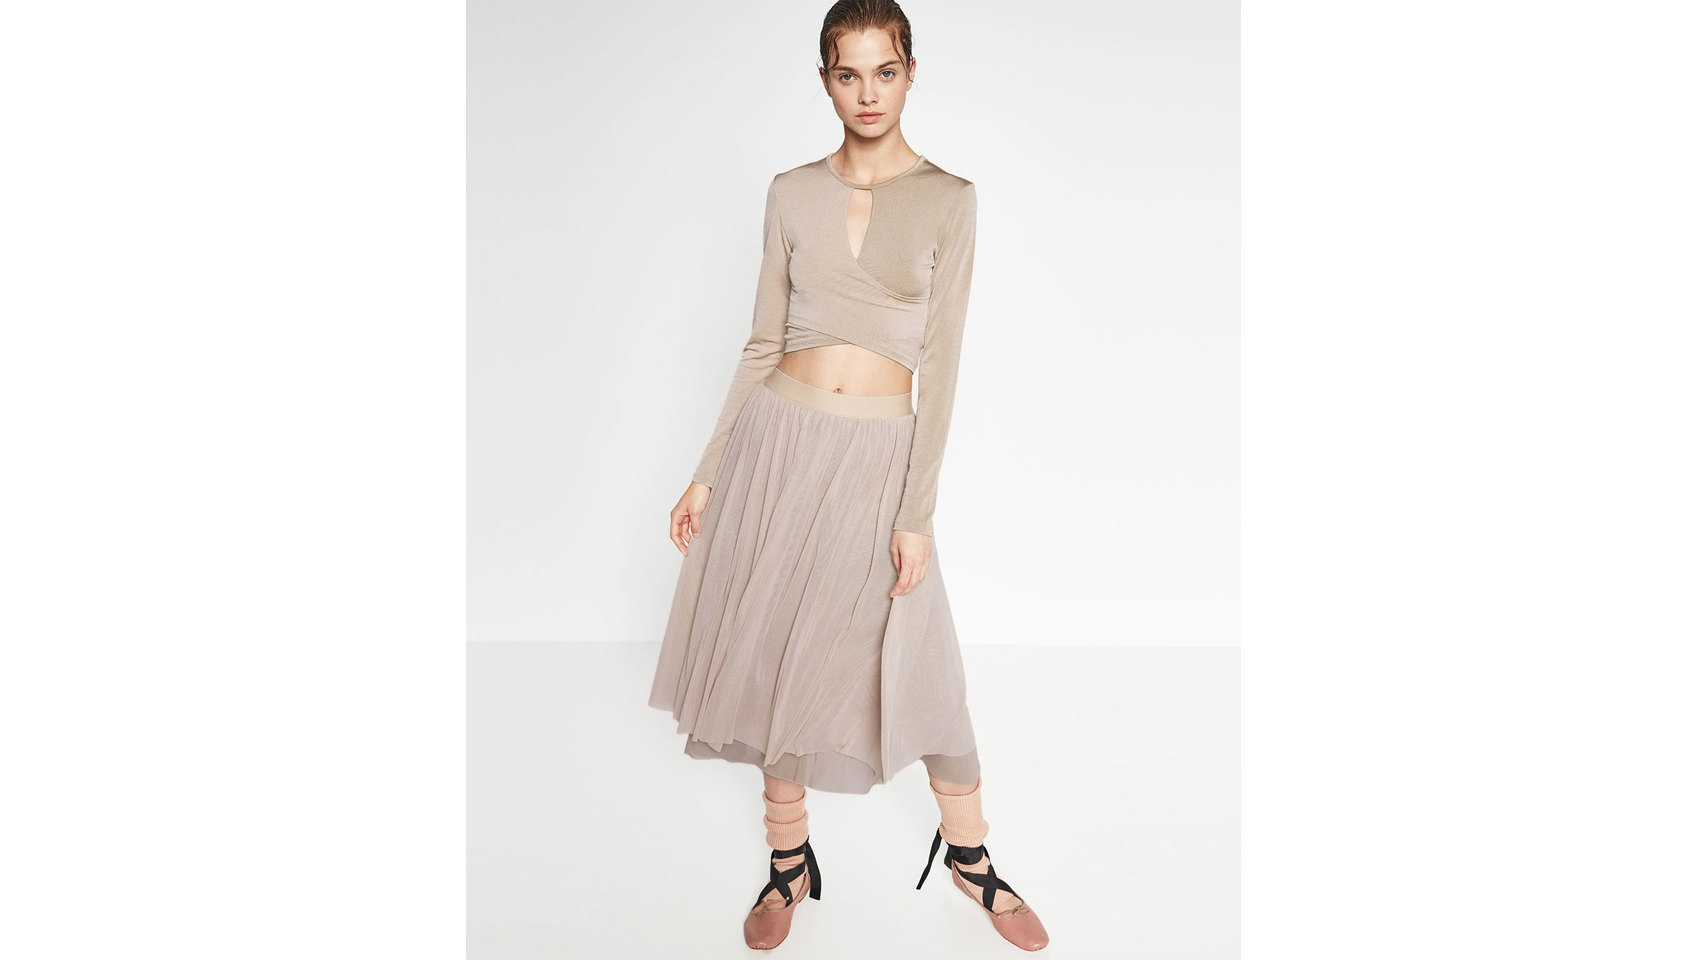 Falda de tull de Zara (19,95 euros).